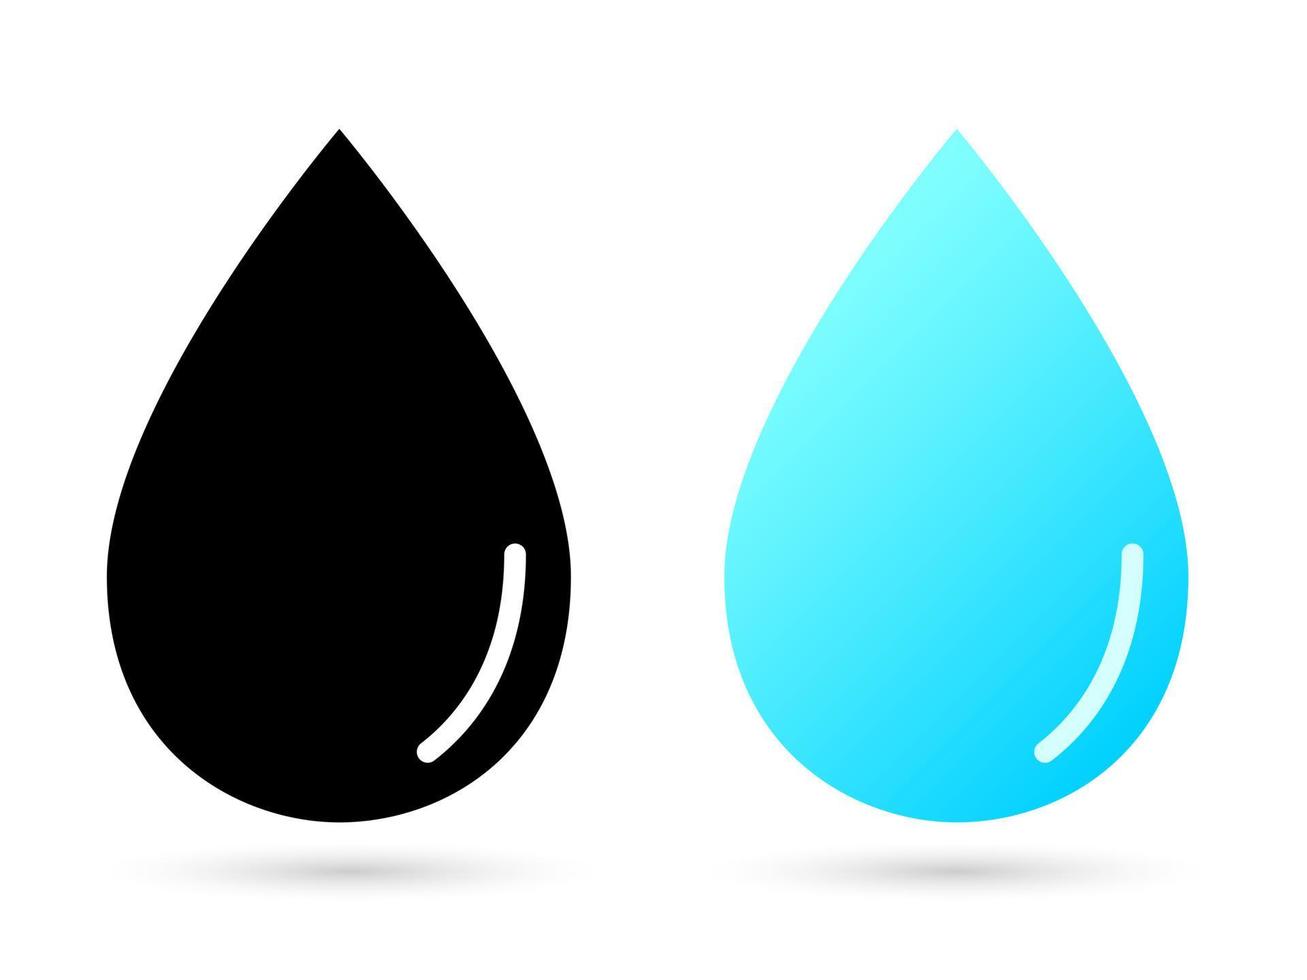 gota de ícone líquido. símbolo de água doce azul com silhueta preta de forma principal de umidade pura chuva pesada e correntes marítimas com córregos vetoriais fluviais vetor